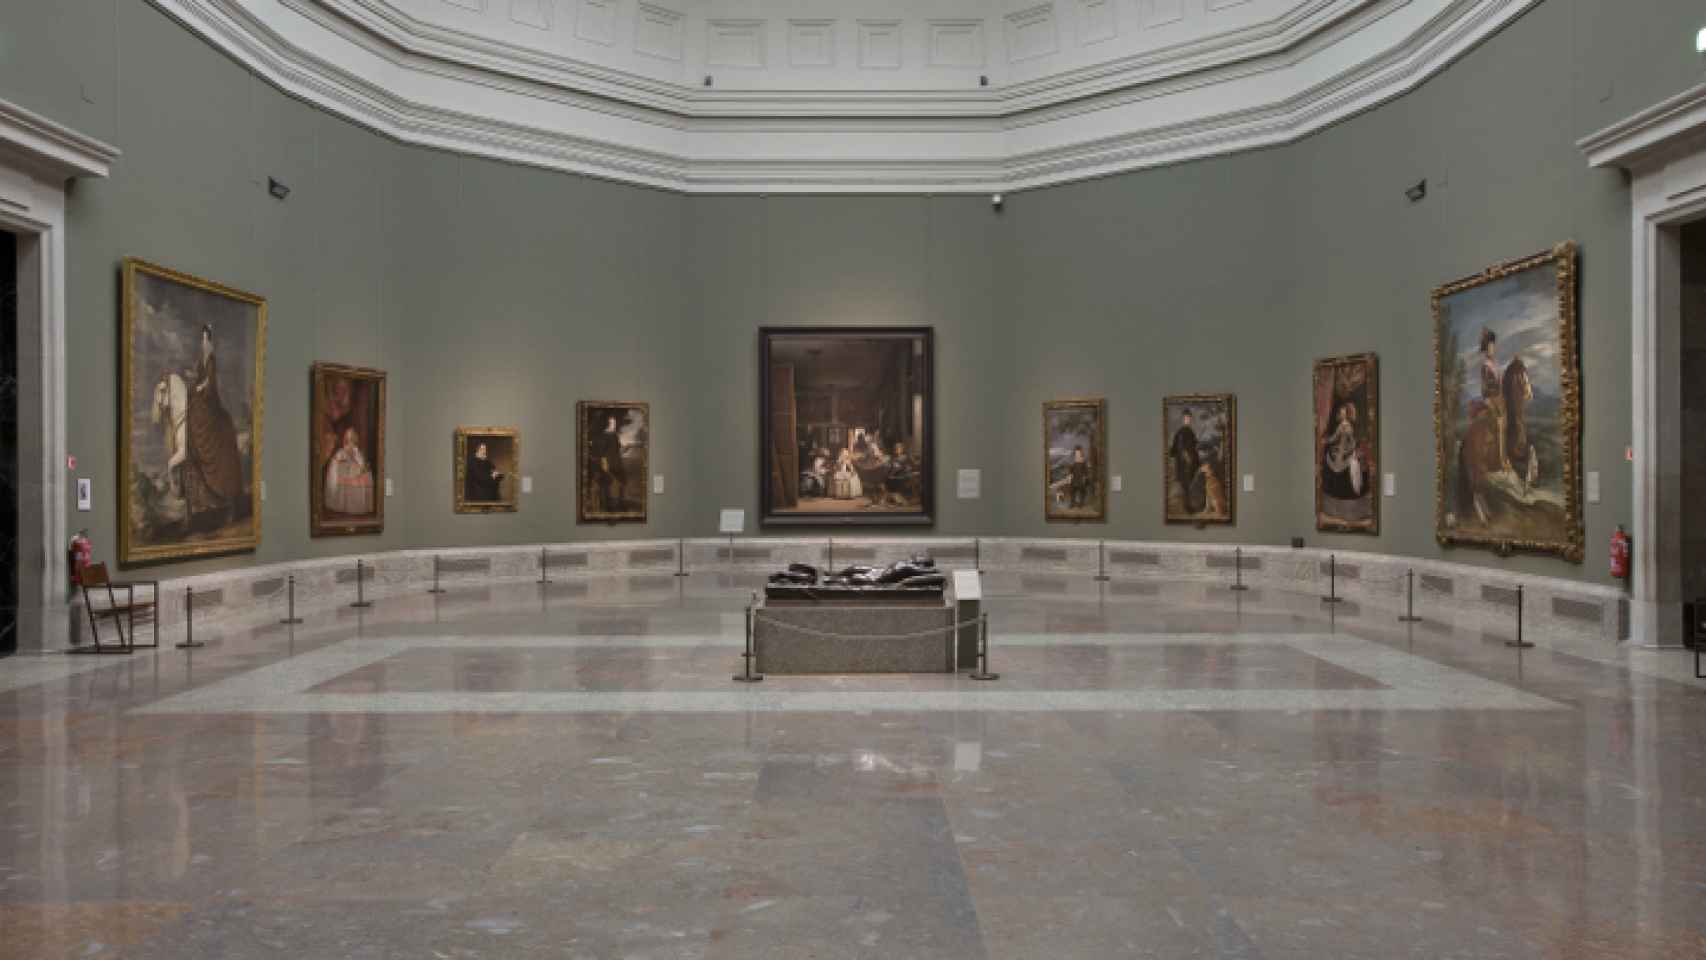 La sala 12 del Museo del Prado, donde están expuestas 'Las meninas' de Velázquez.